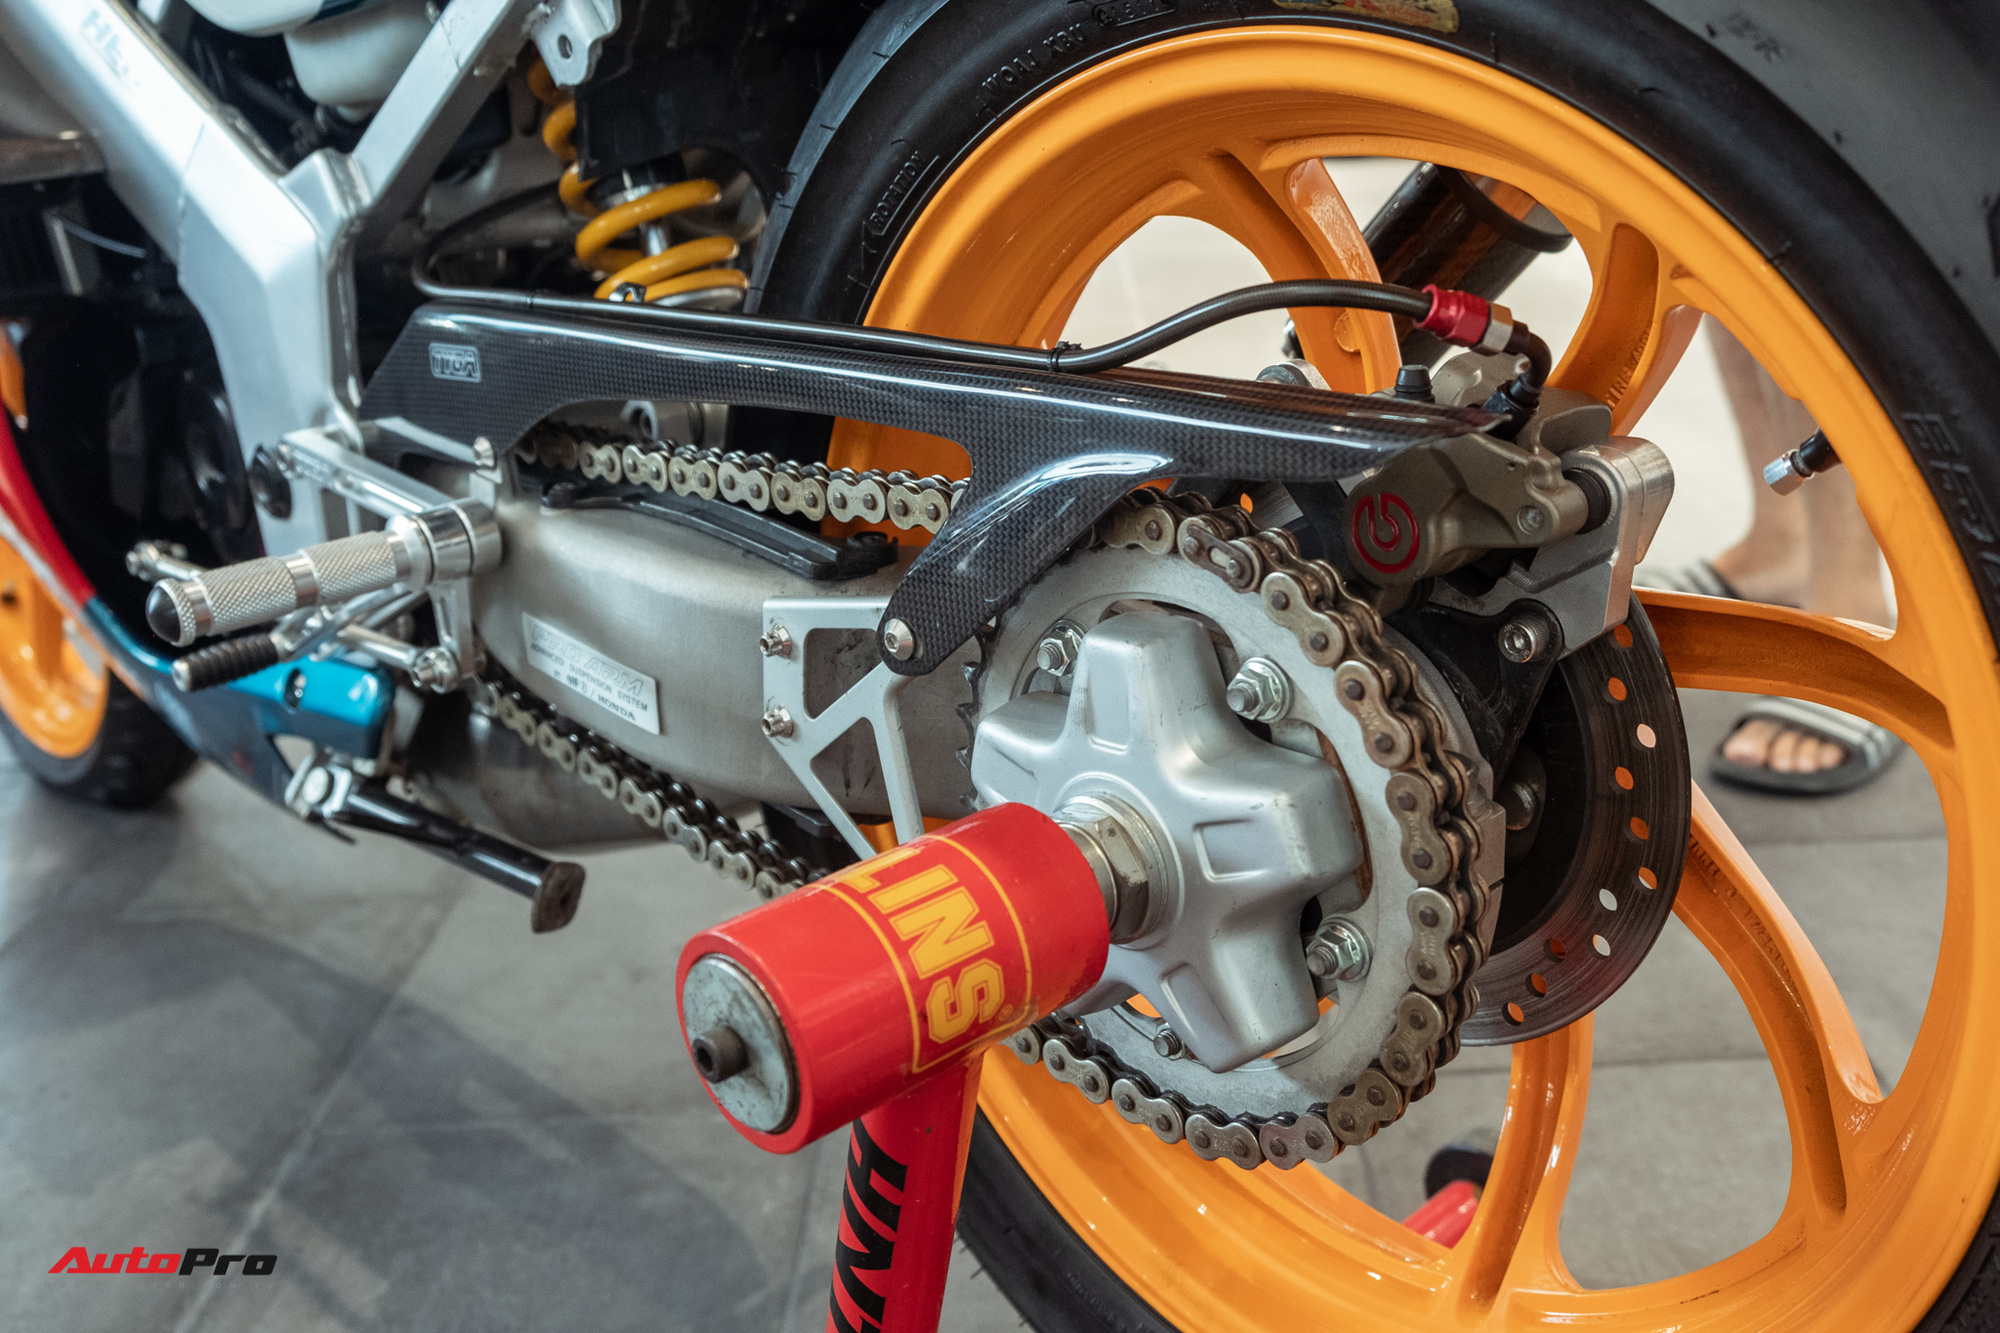 Honda NSR 150 RR complete restore Motorbikes on Carousell